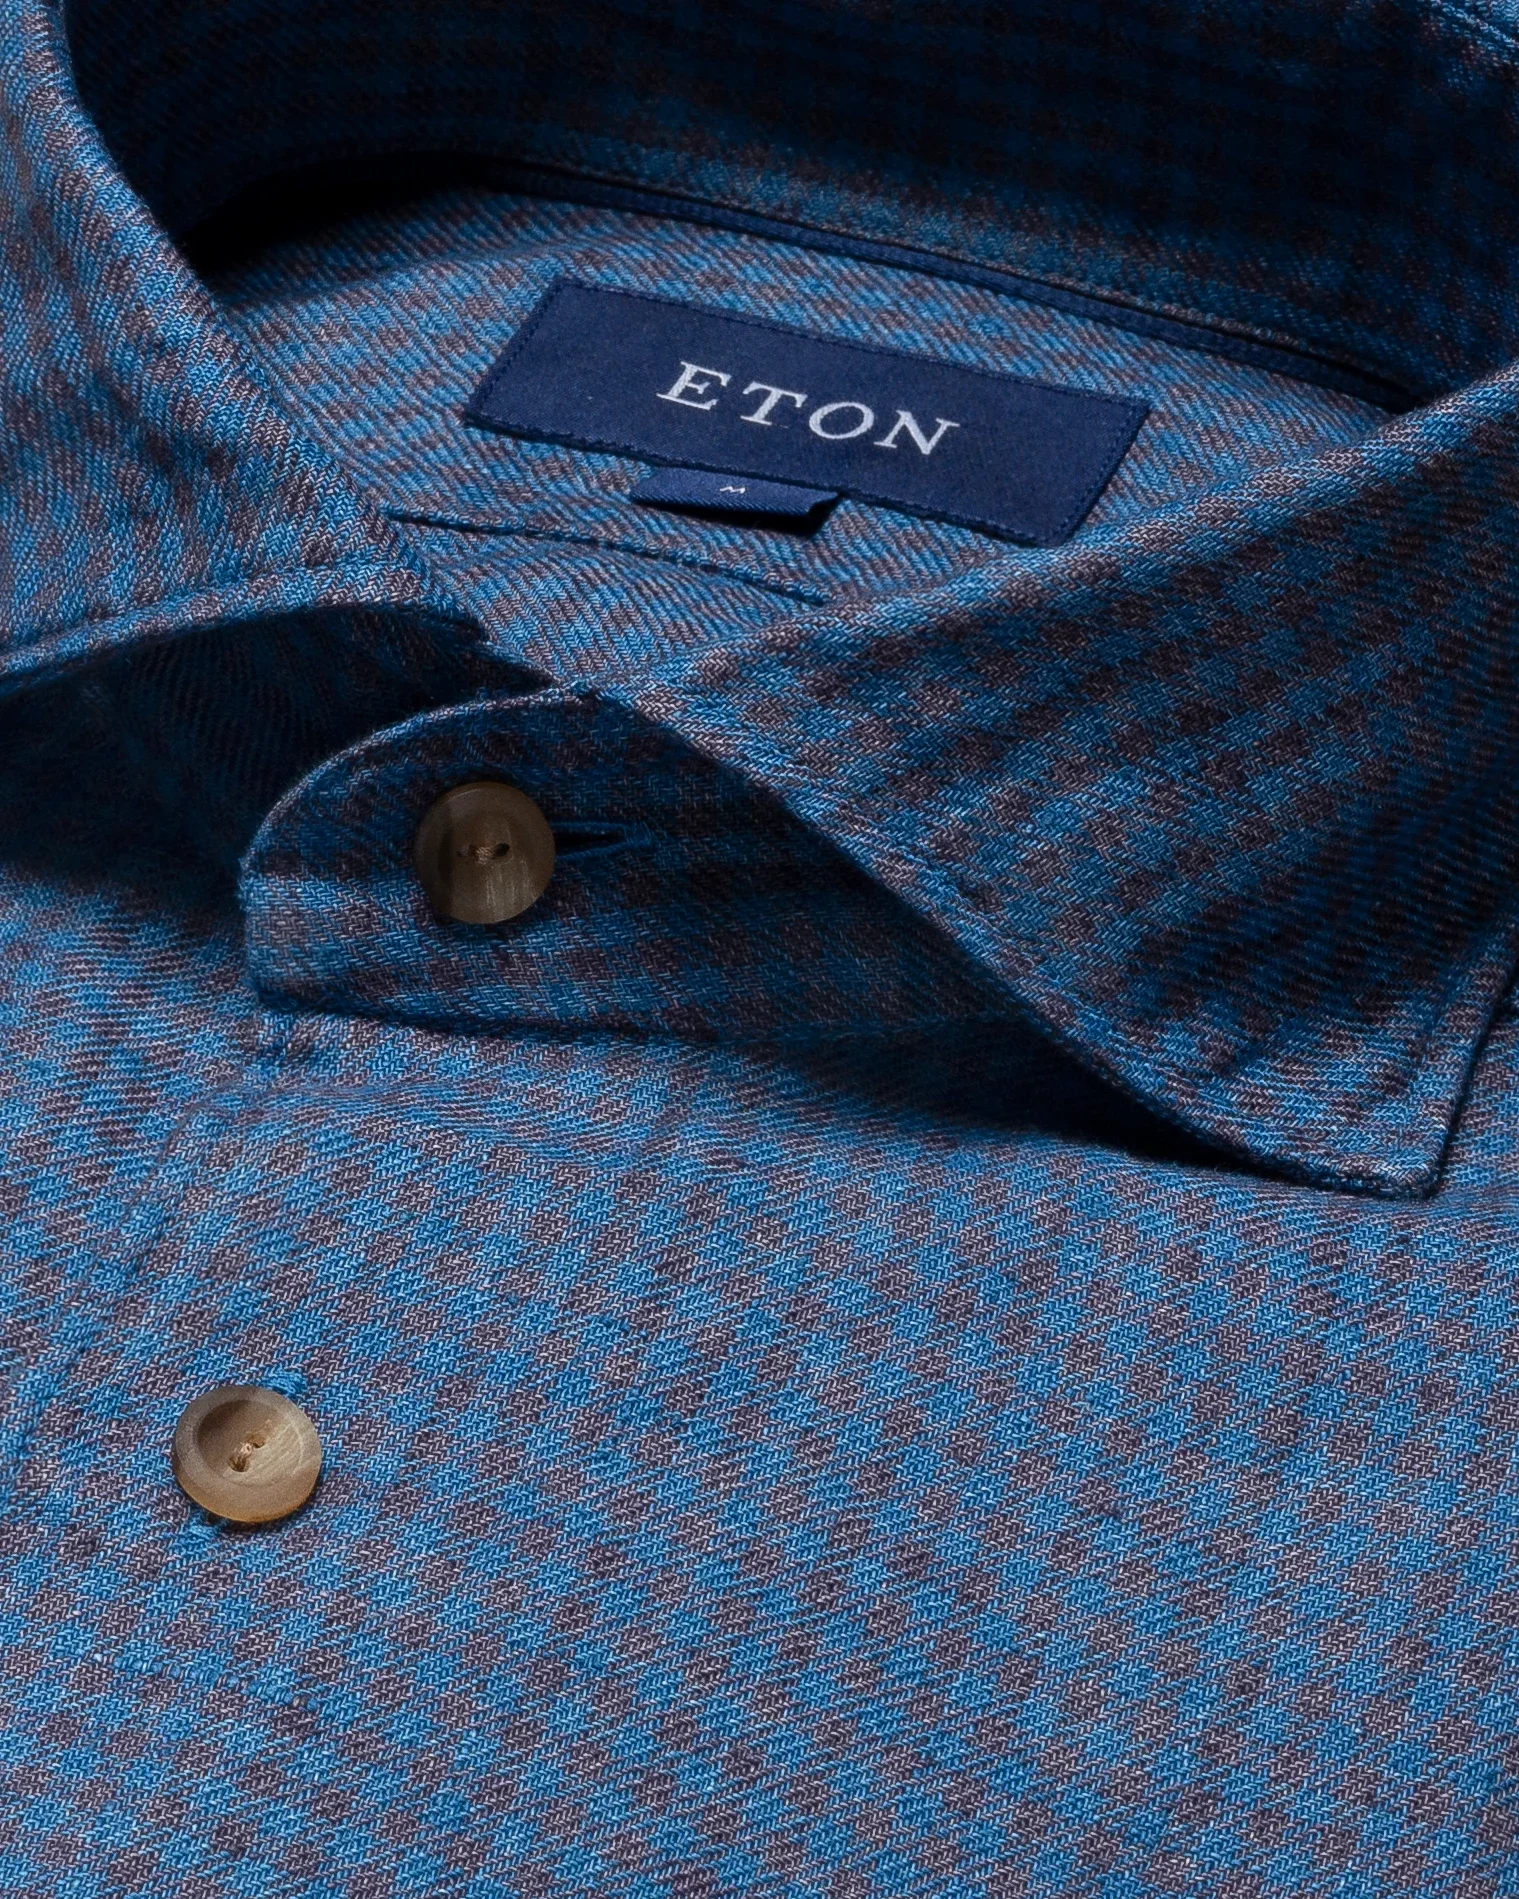 Eton - navy blue linen twill